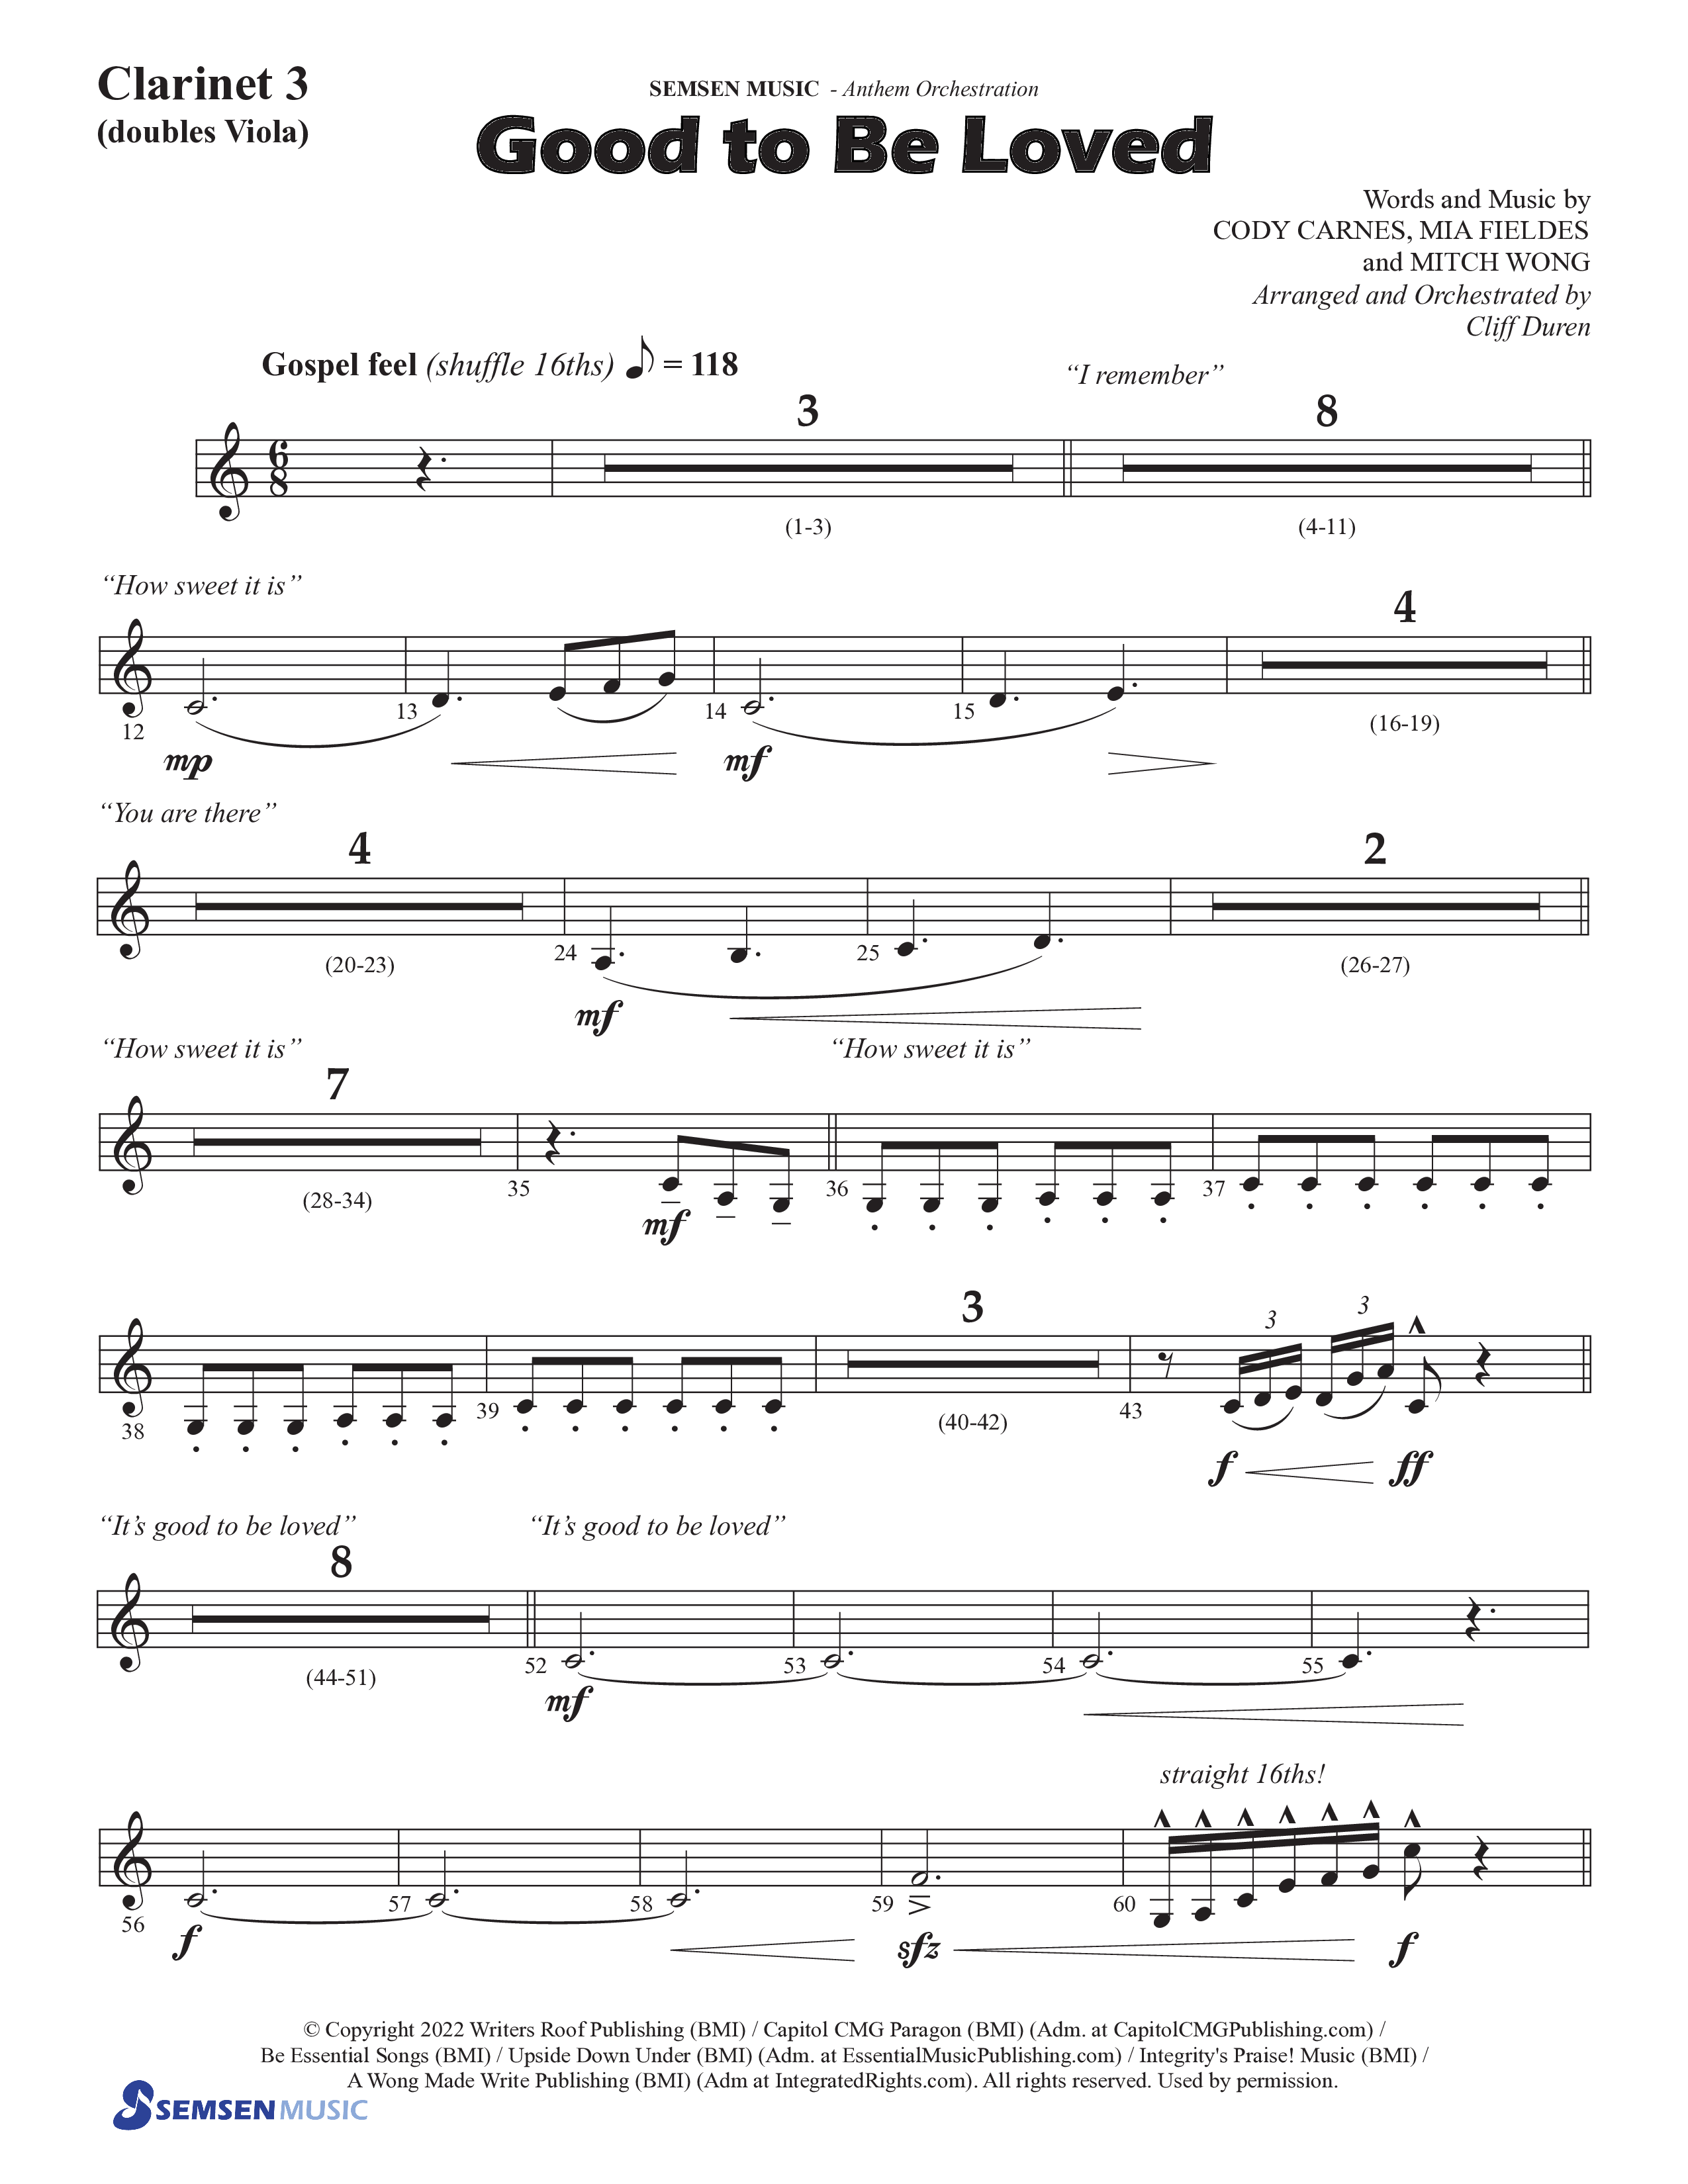 Good To Be Loved (Choral Anthem SATB) Clarinet 3 (Semsen Music / Arr. Cliff Duren)